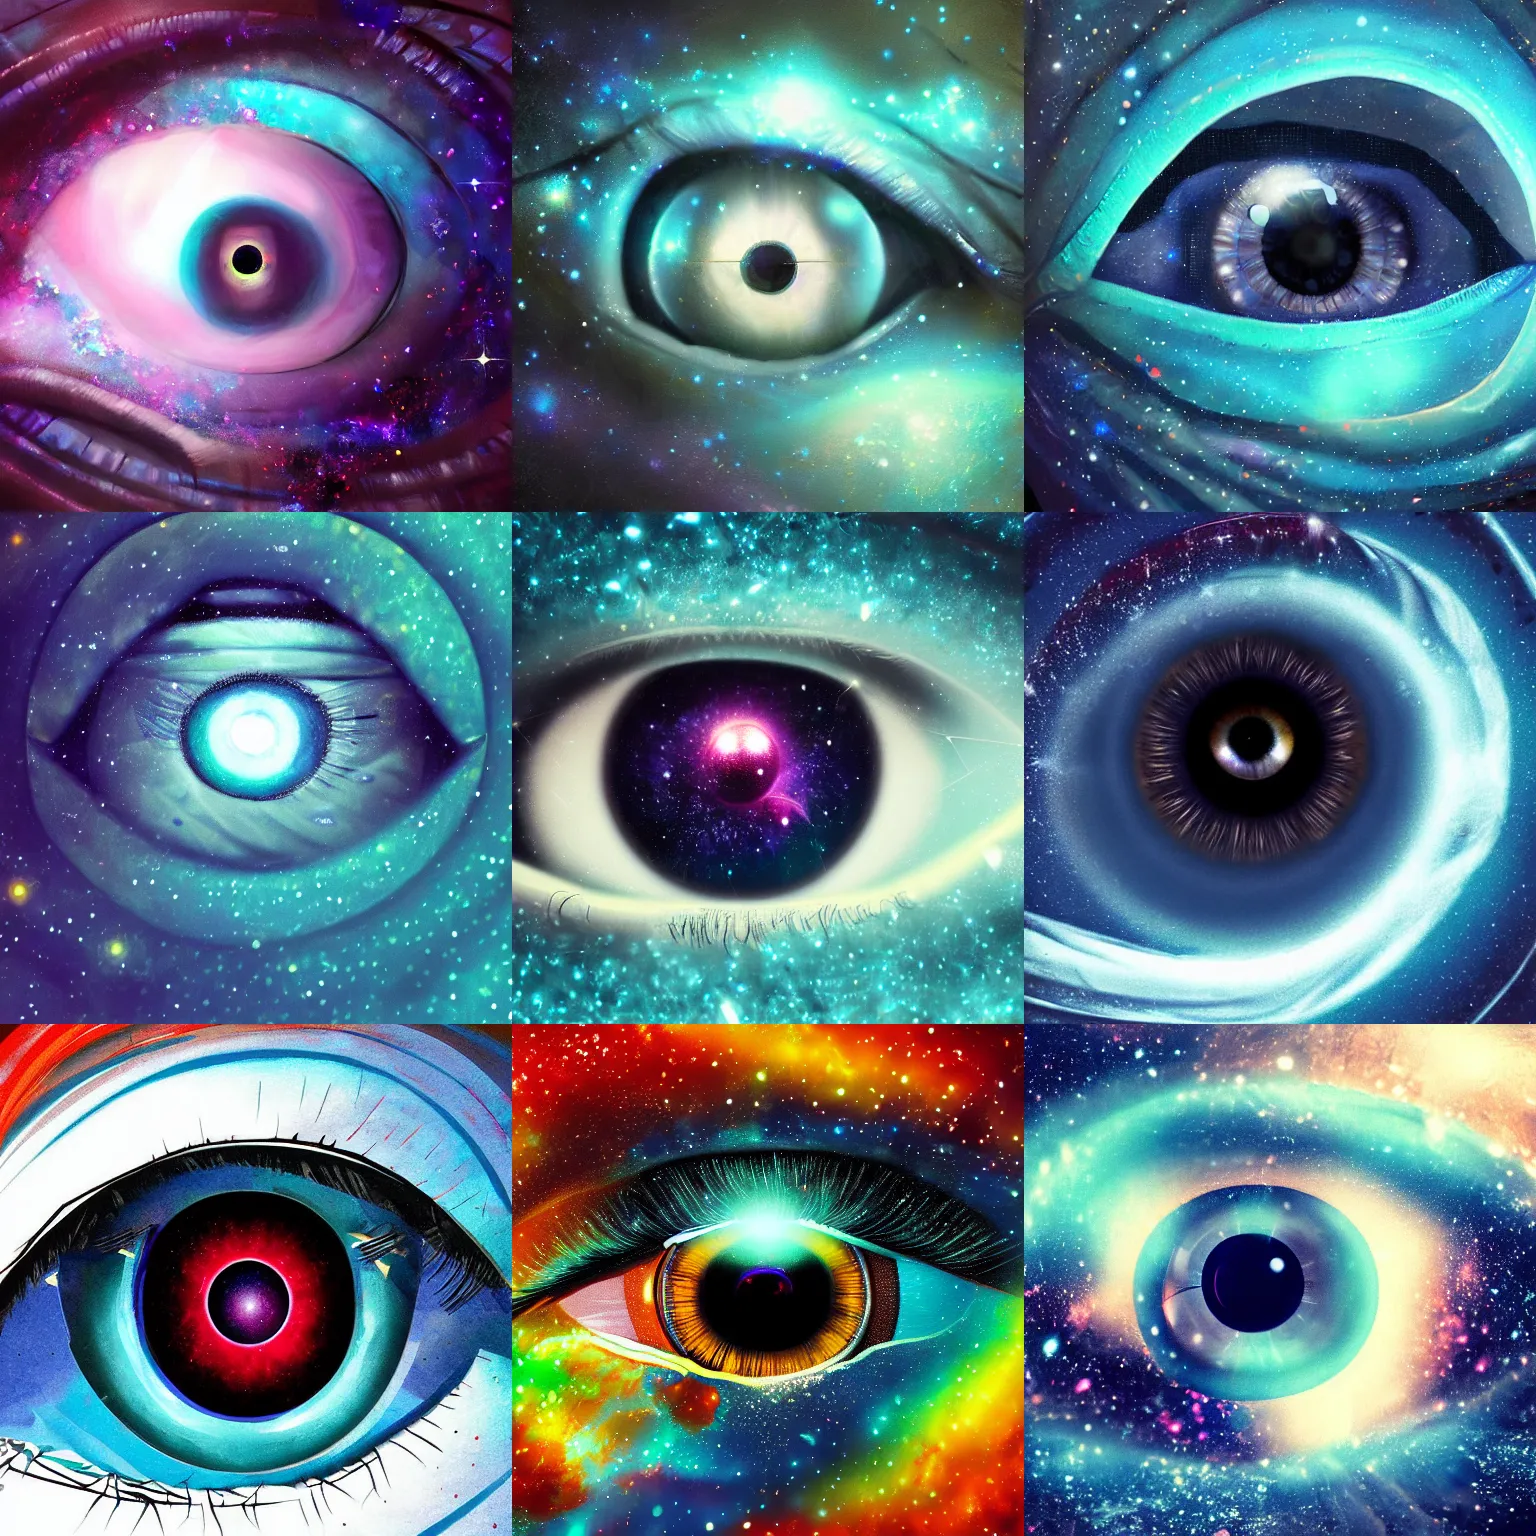 Prompt: a galaxy inside of an eye, beautiful eye, eye, eye of a woman, digital art, trending on artstation